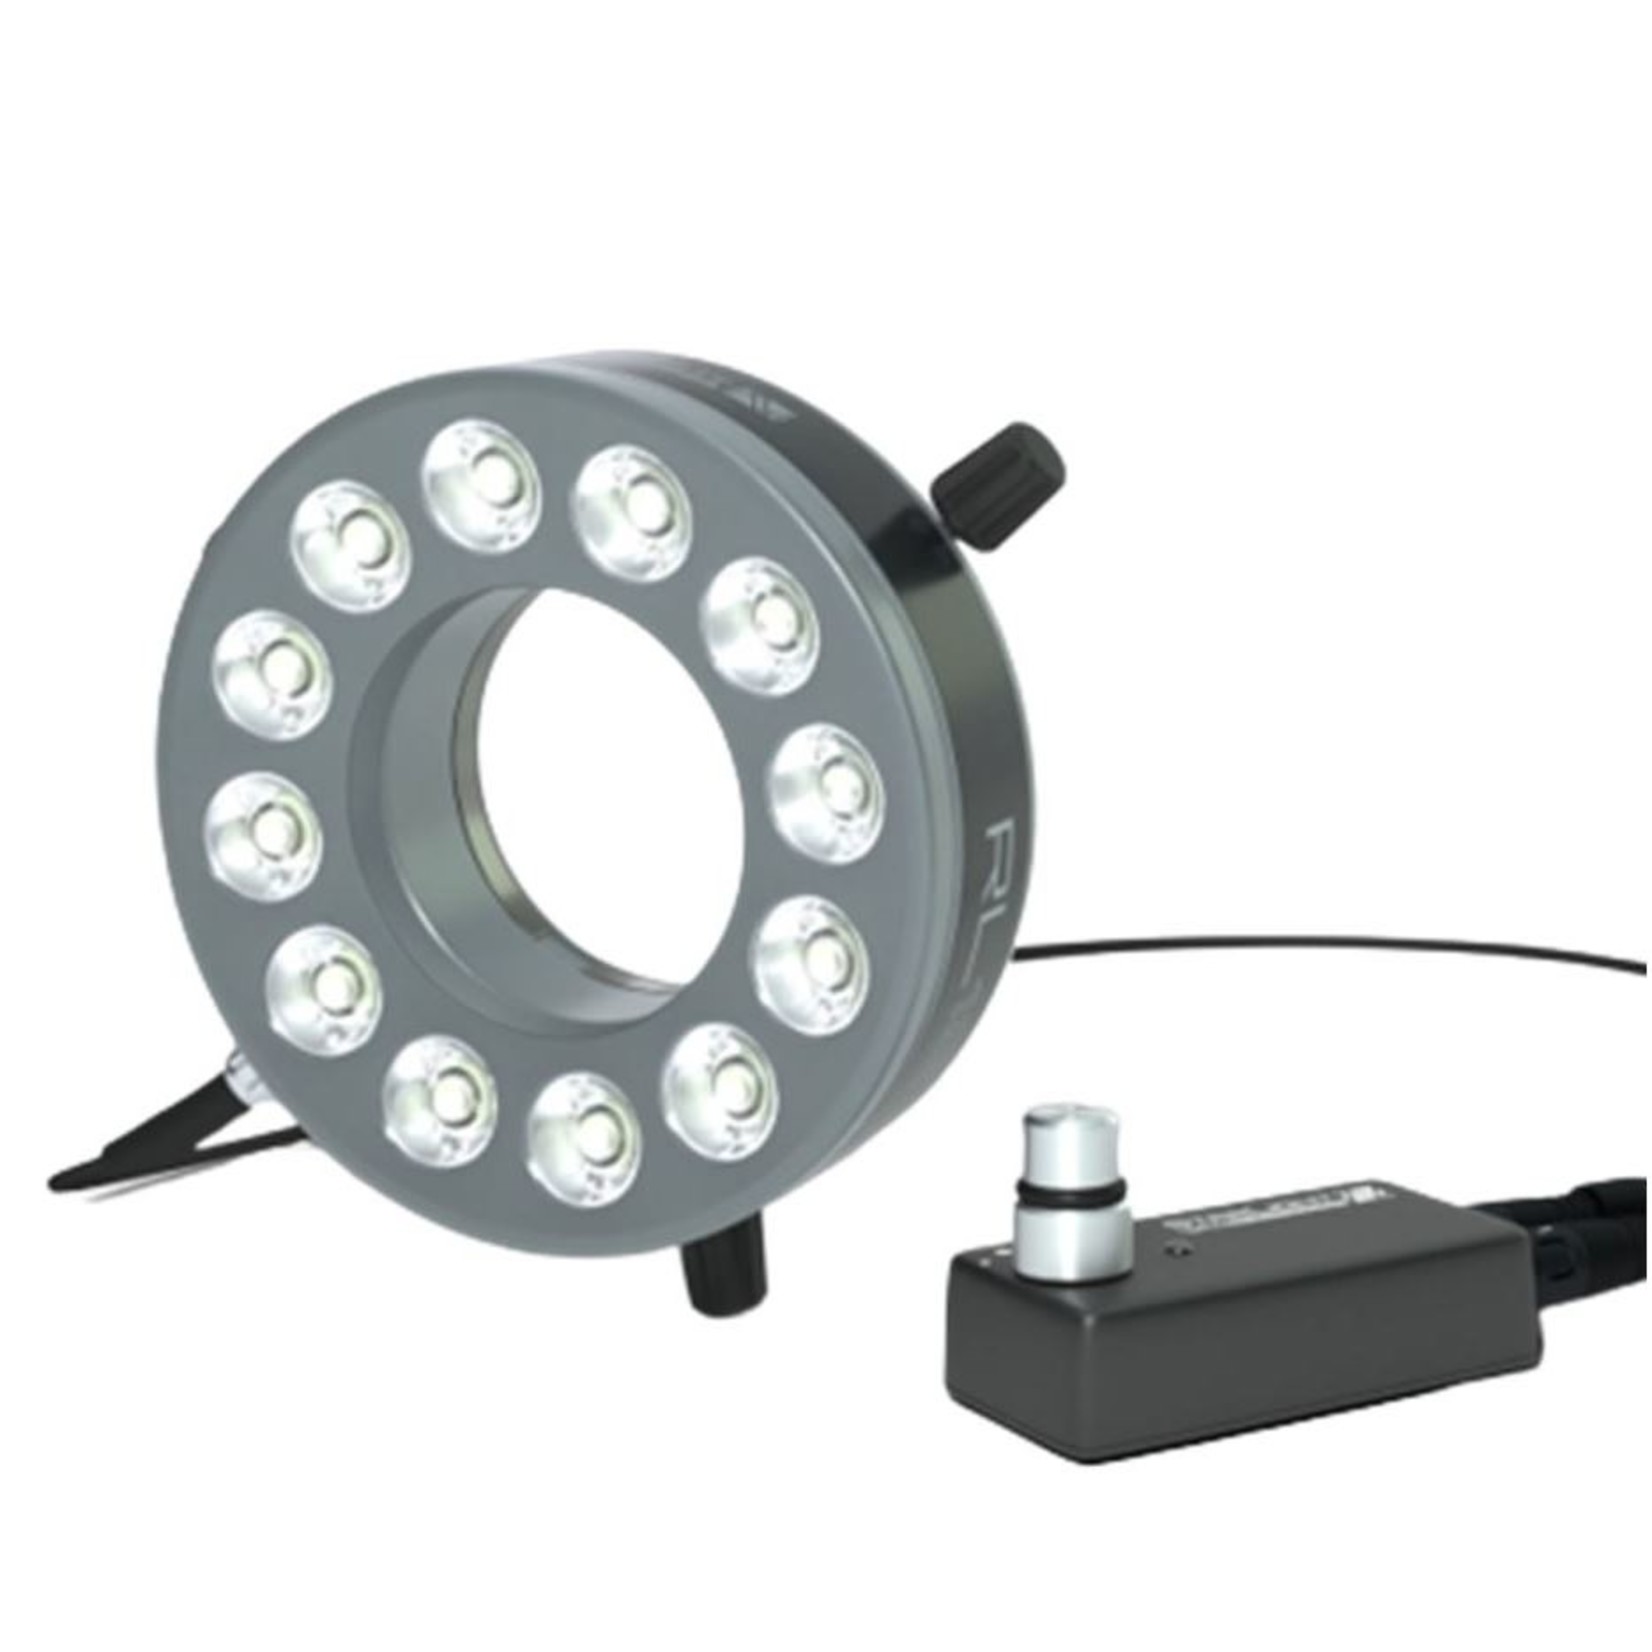 Lichtstarkes Hochleistungs-Ringlicht für Arbeitsabstand 150 mm bis 500 mm - optimal ca. 270 mm